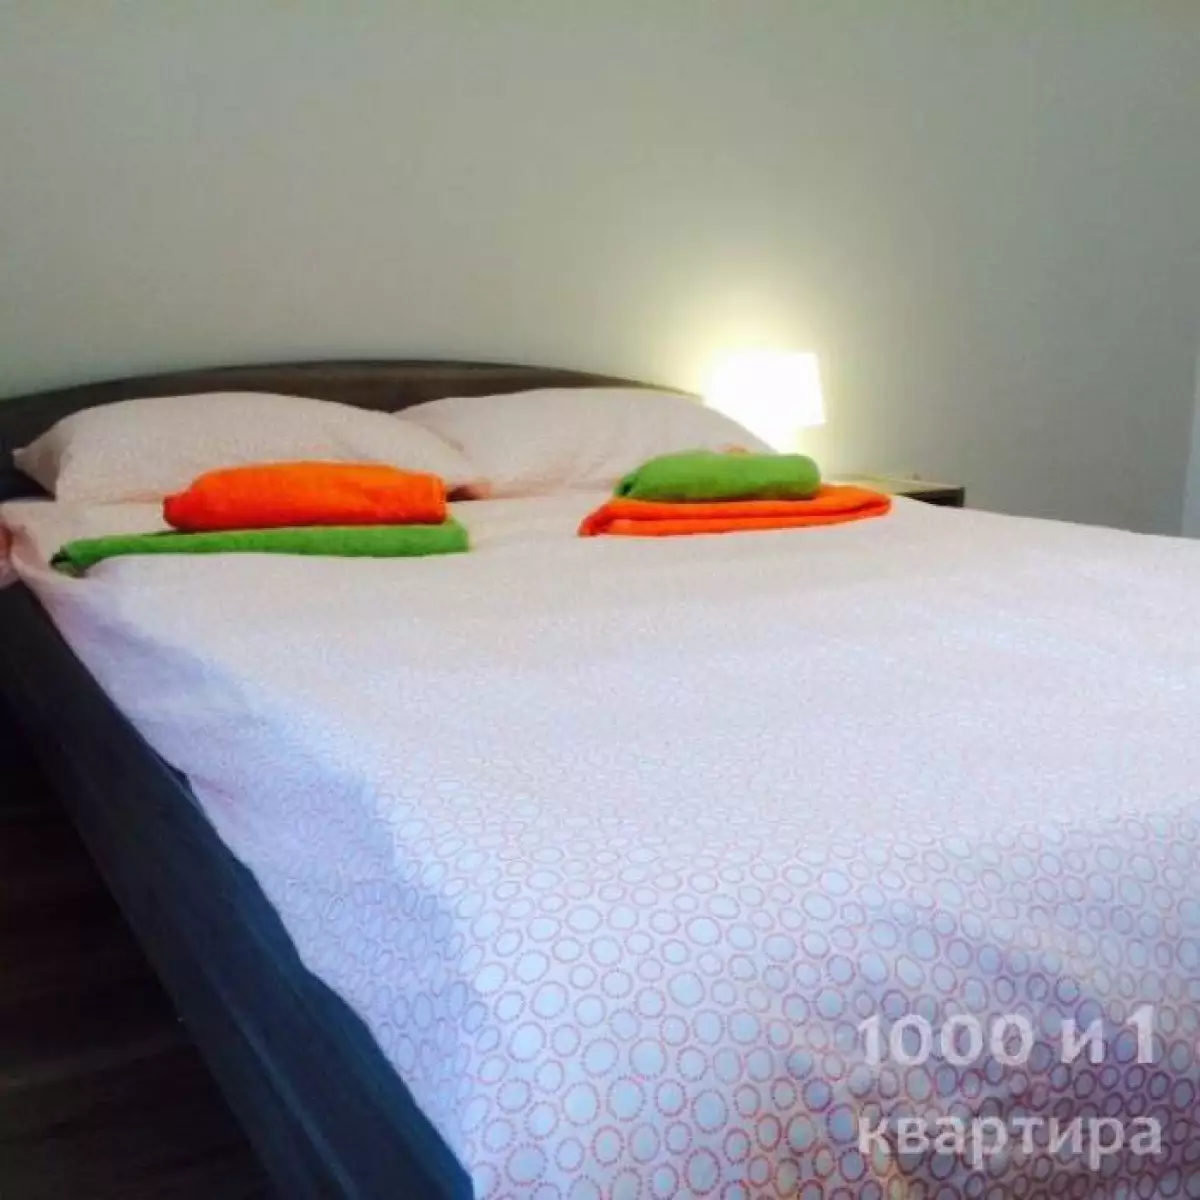 Вариант #82678 для аренды посуточно в Казани Чистопольская , д.71 а на 7 гостей - фото 2